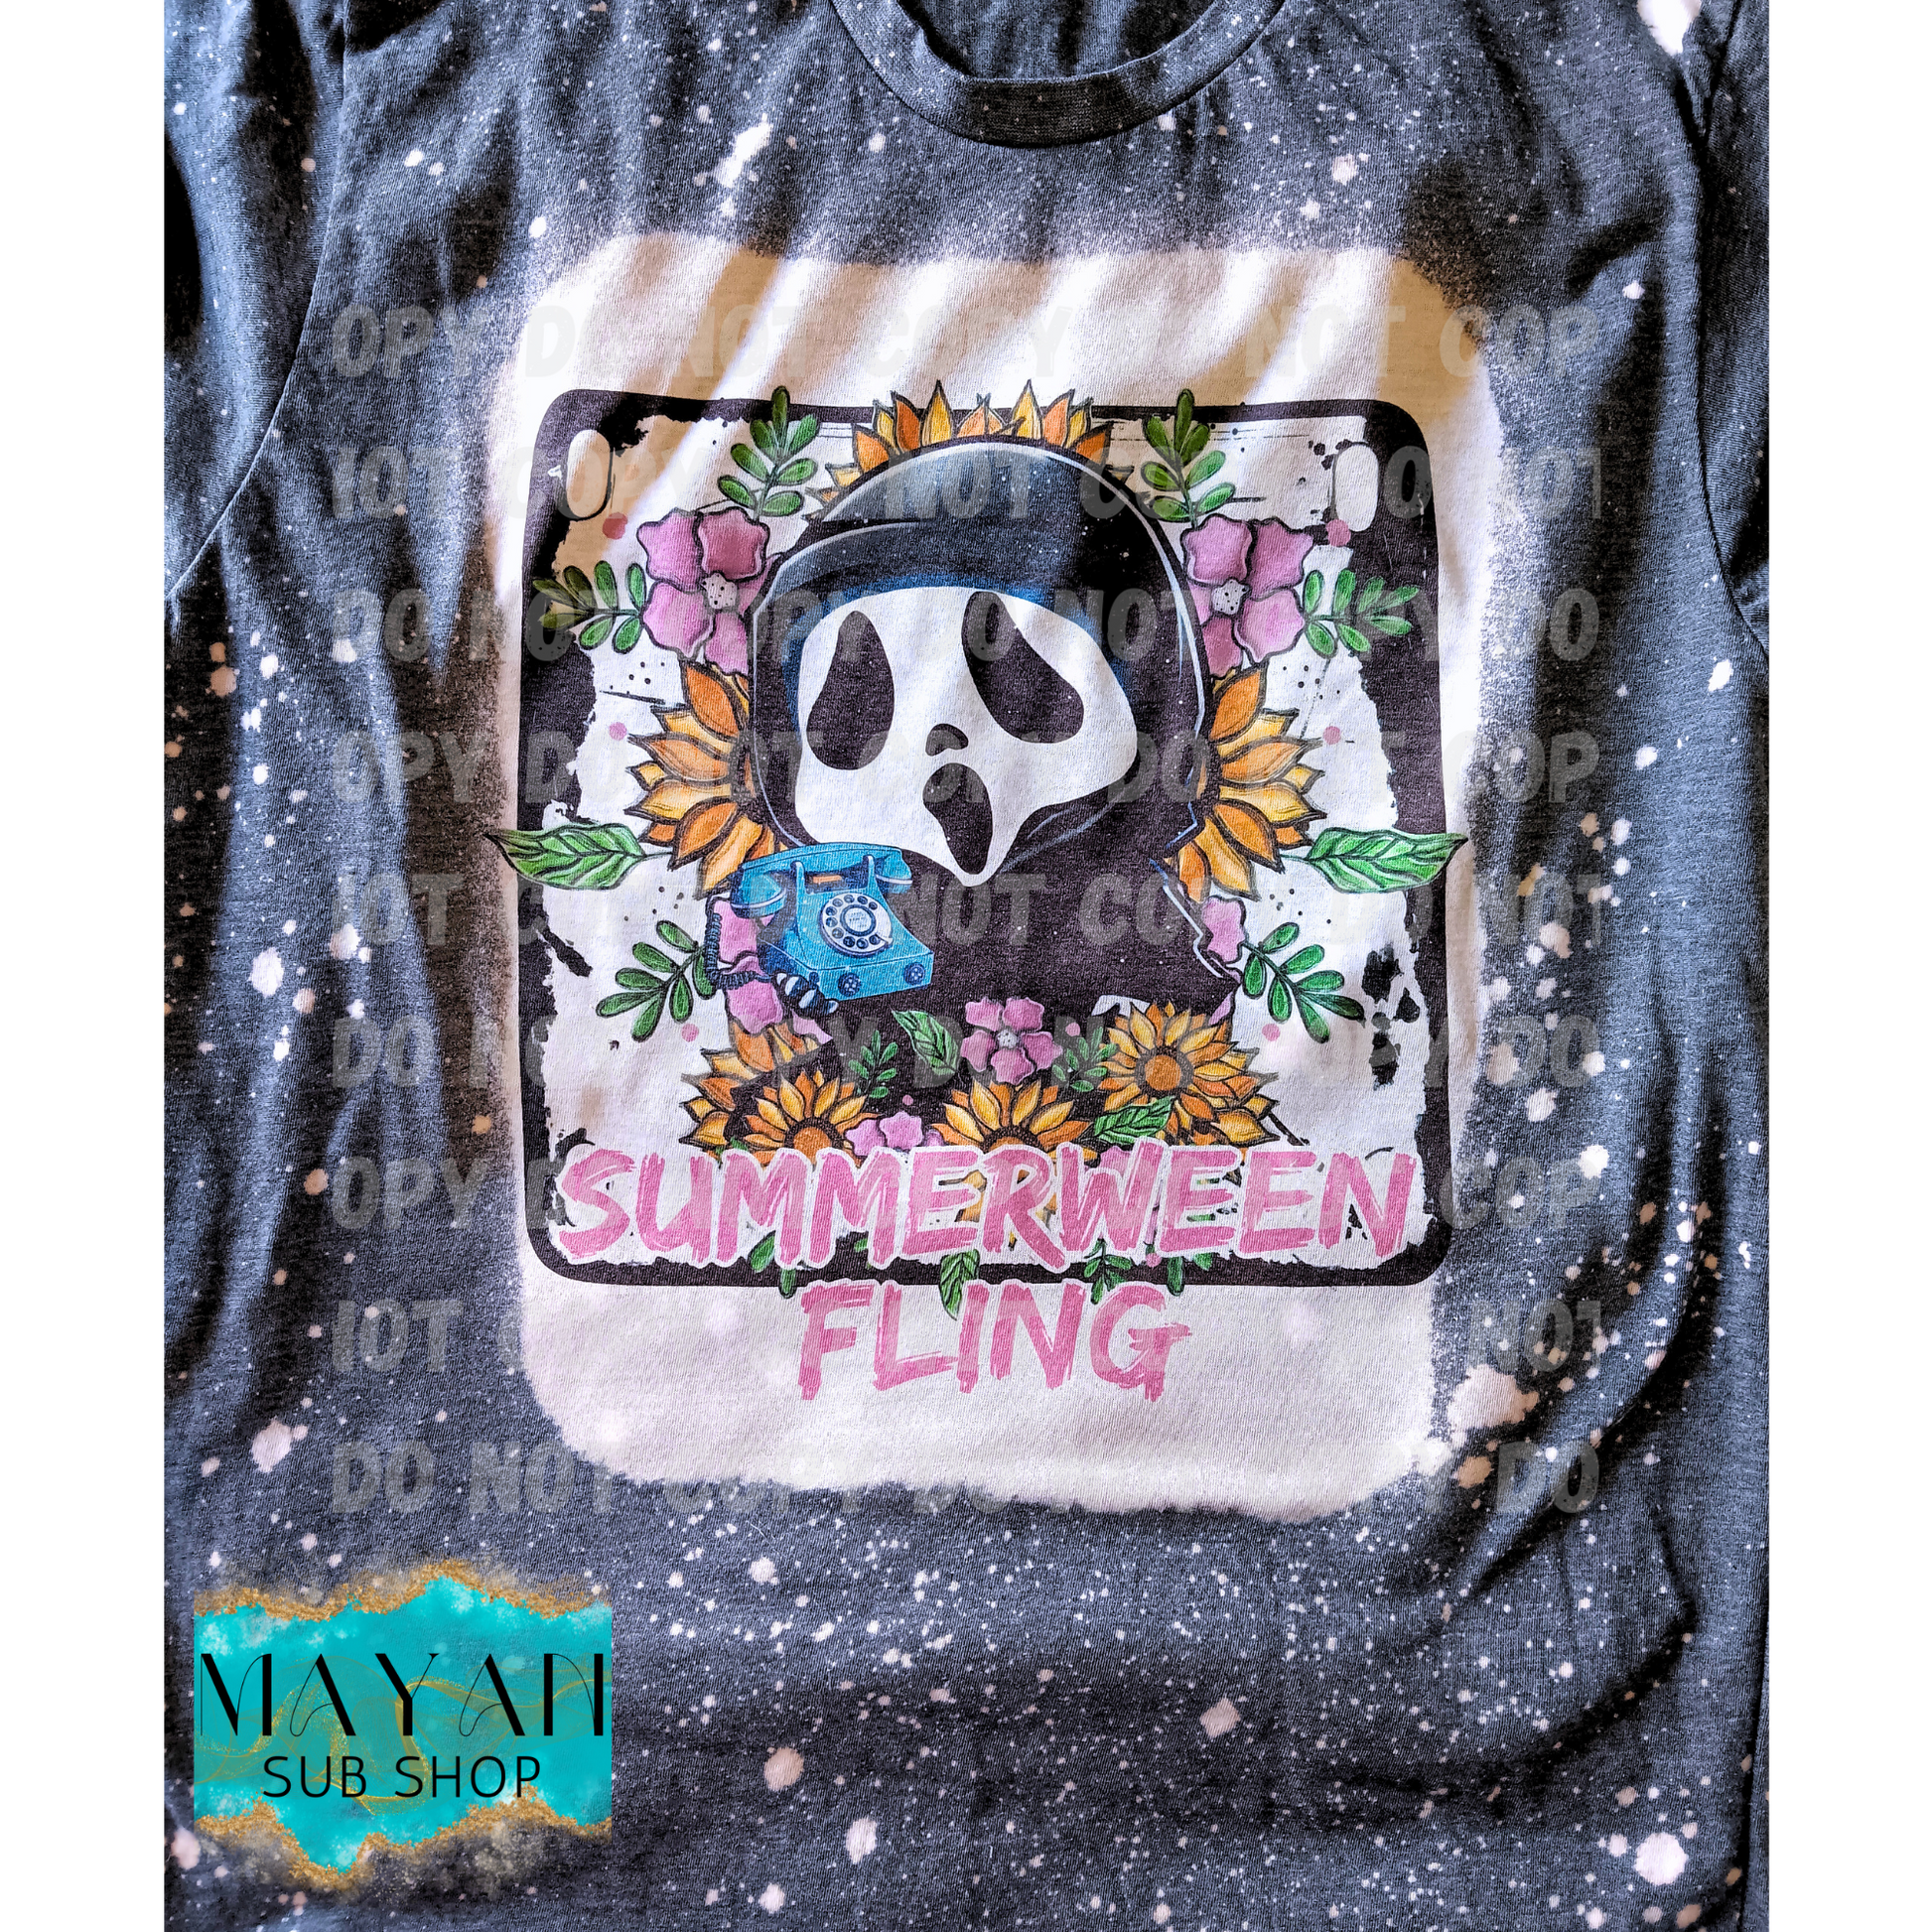 Summerween Fling Bleached Shirt - Mayan Sub Shop